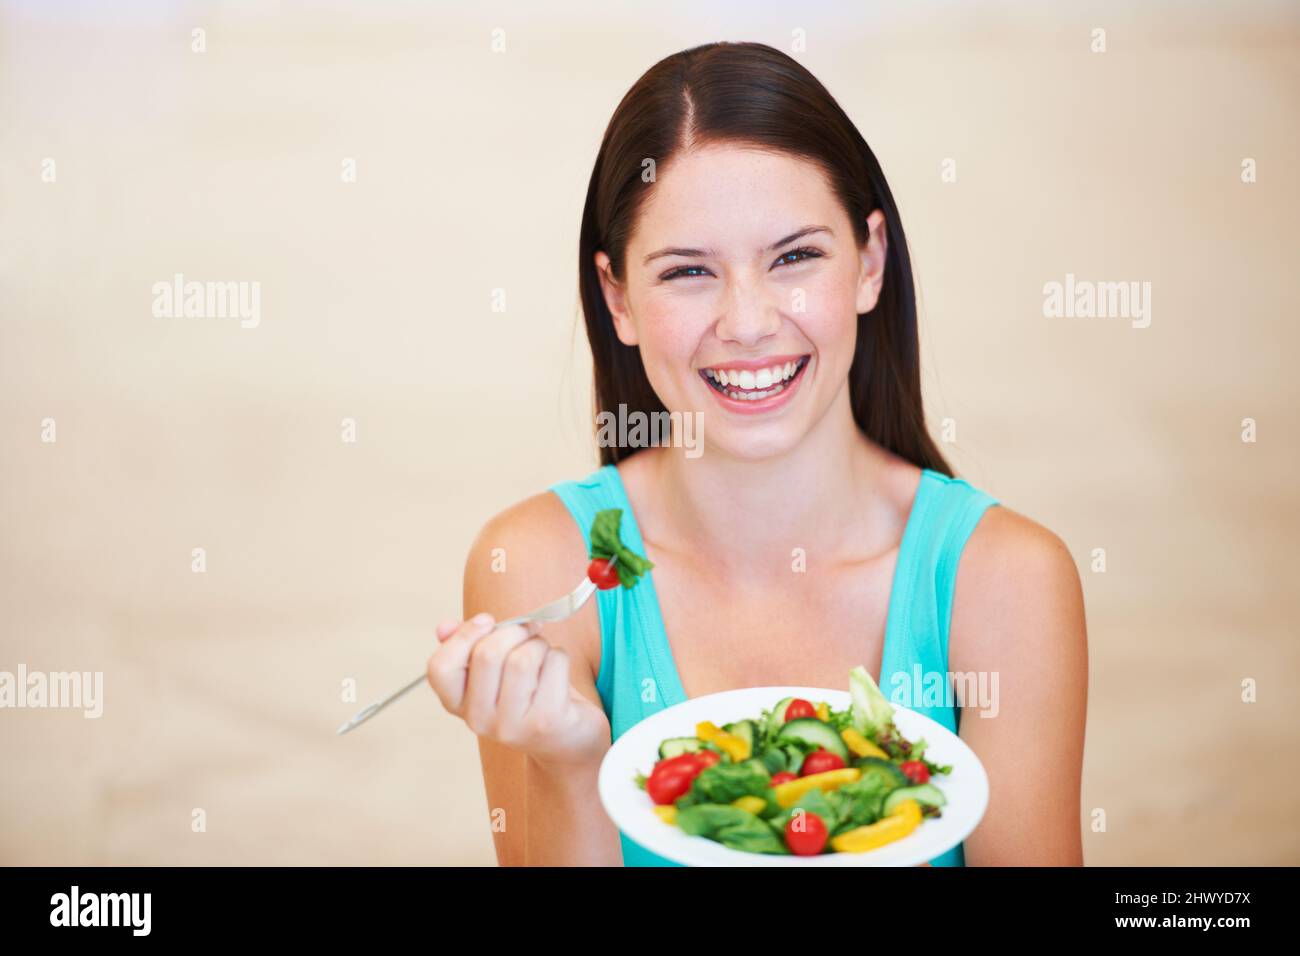 Un repas nutritionnel. Portrait d'une jeune femme heureuse appréciant une salade. Banque D'Images